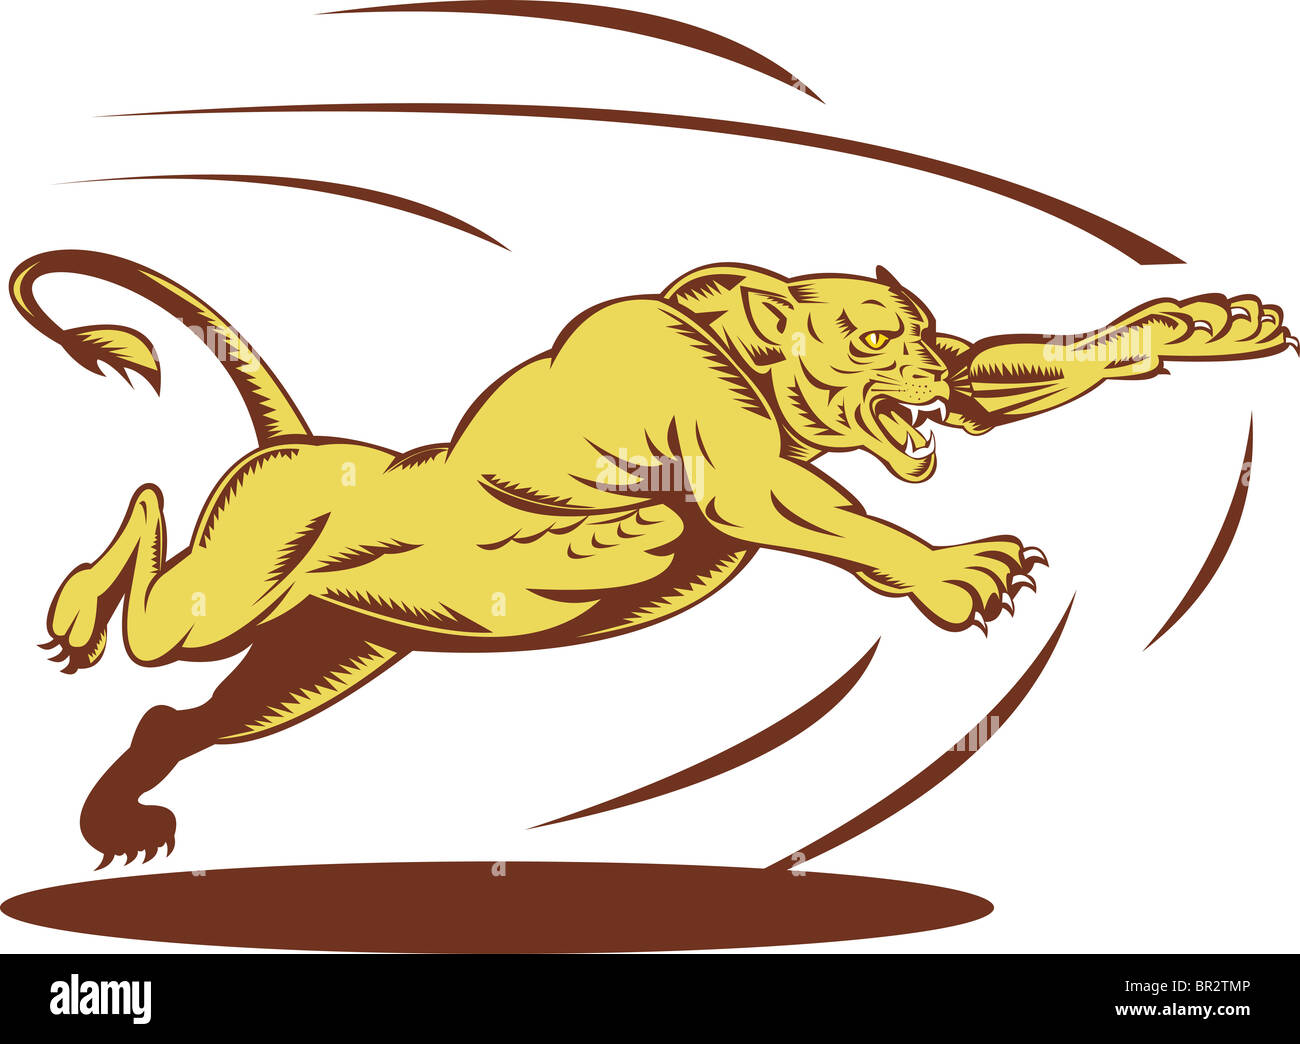 Ilustración un gato pantera Mountain Lion león saltando y atacando realizada en xilografía estilo retro Fotografía de stock - Alamy